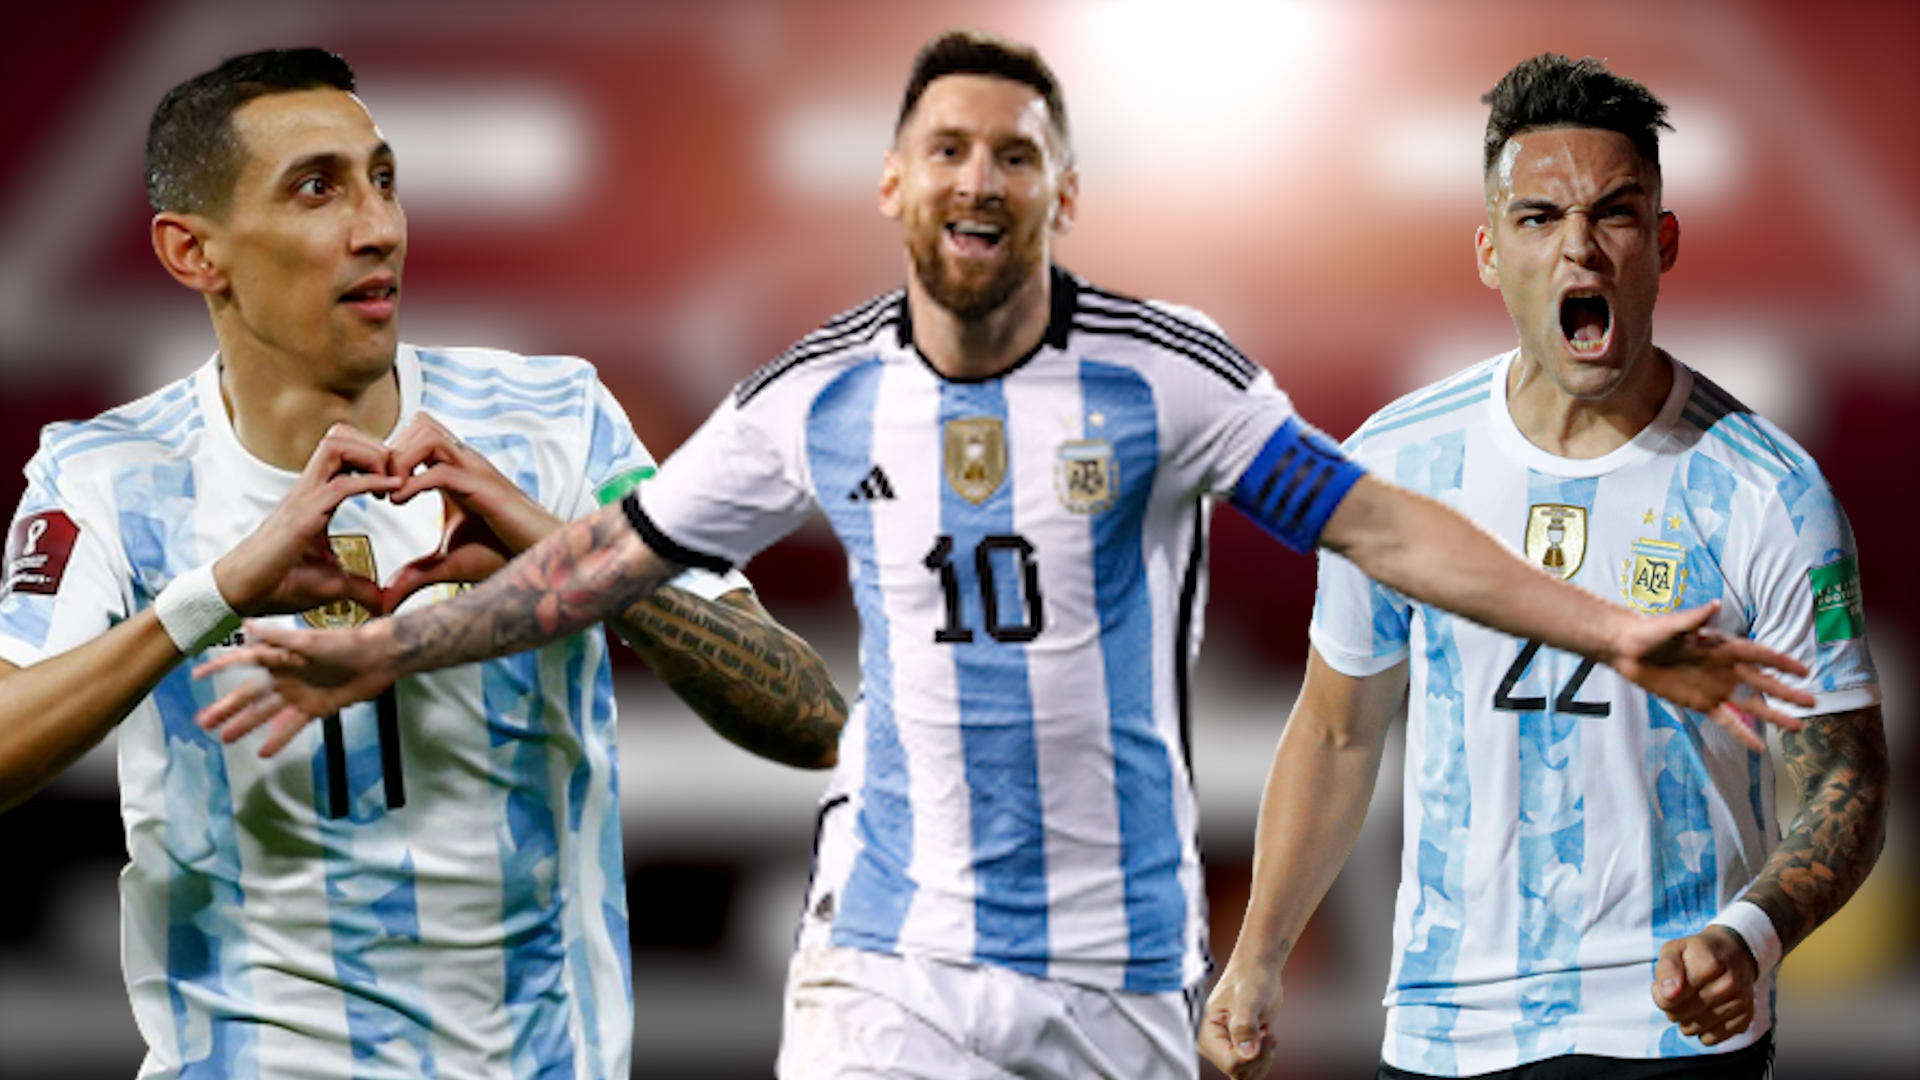 Đội tuyển Argentina đã trở lại với sức mạnh mới! Các cầu thủ đã cống hiến tất cả để giành chiến thắng cho quốc gia. Xem hình ảnh đội tuyển thể hiện sự ủng hộ và tinh thần đoàn kết của họ. Cùng nhau cổ vũ đội tuyển quốc gia Argentina!